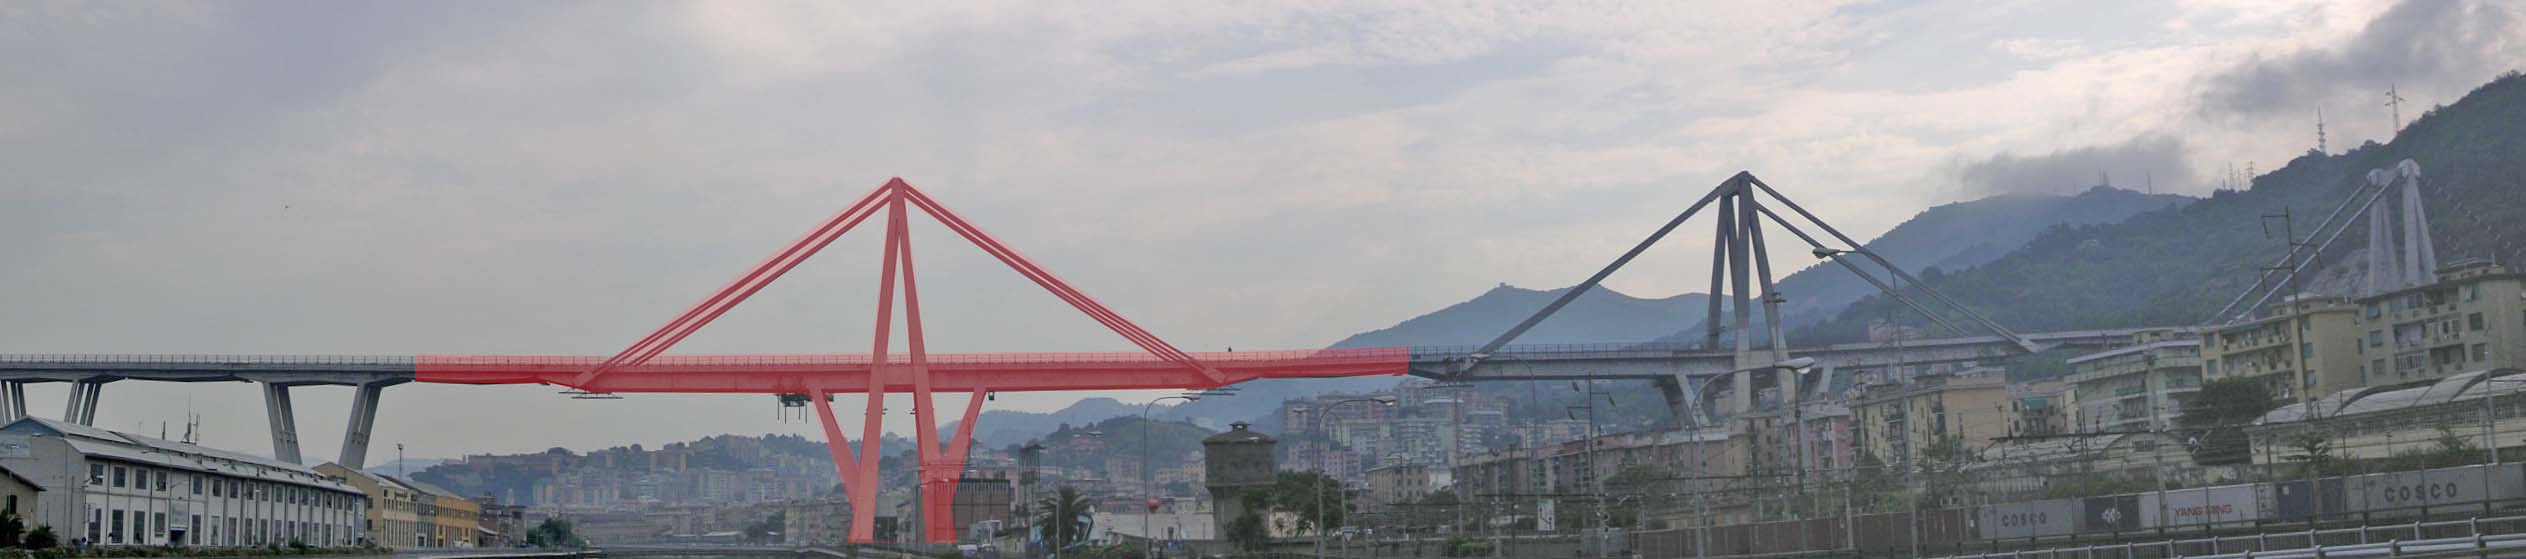 Die Morandi-Brücke in Genua